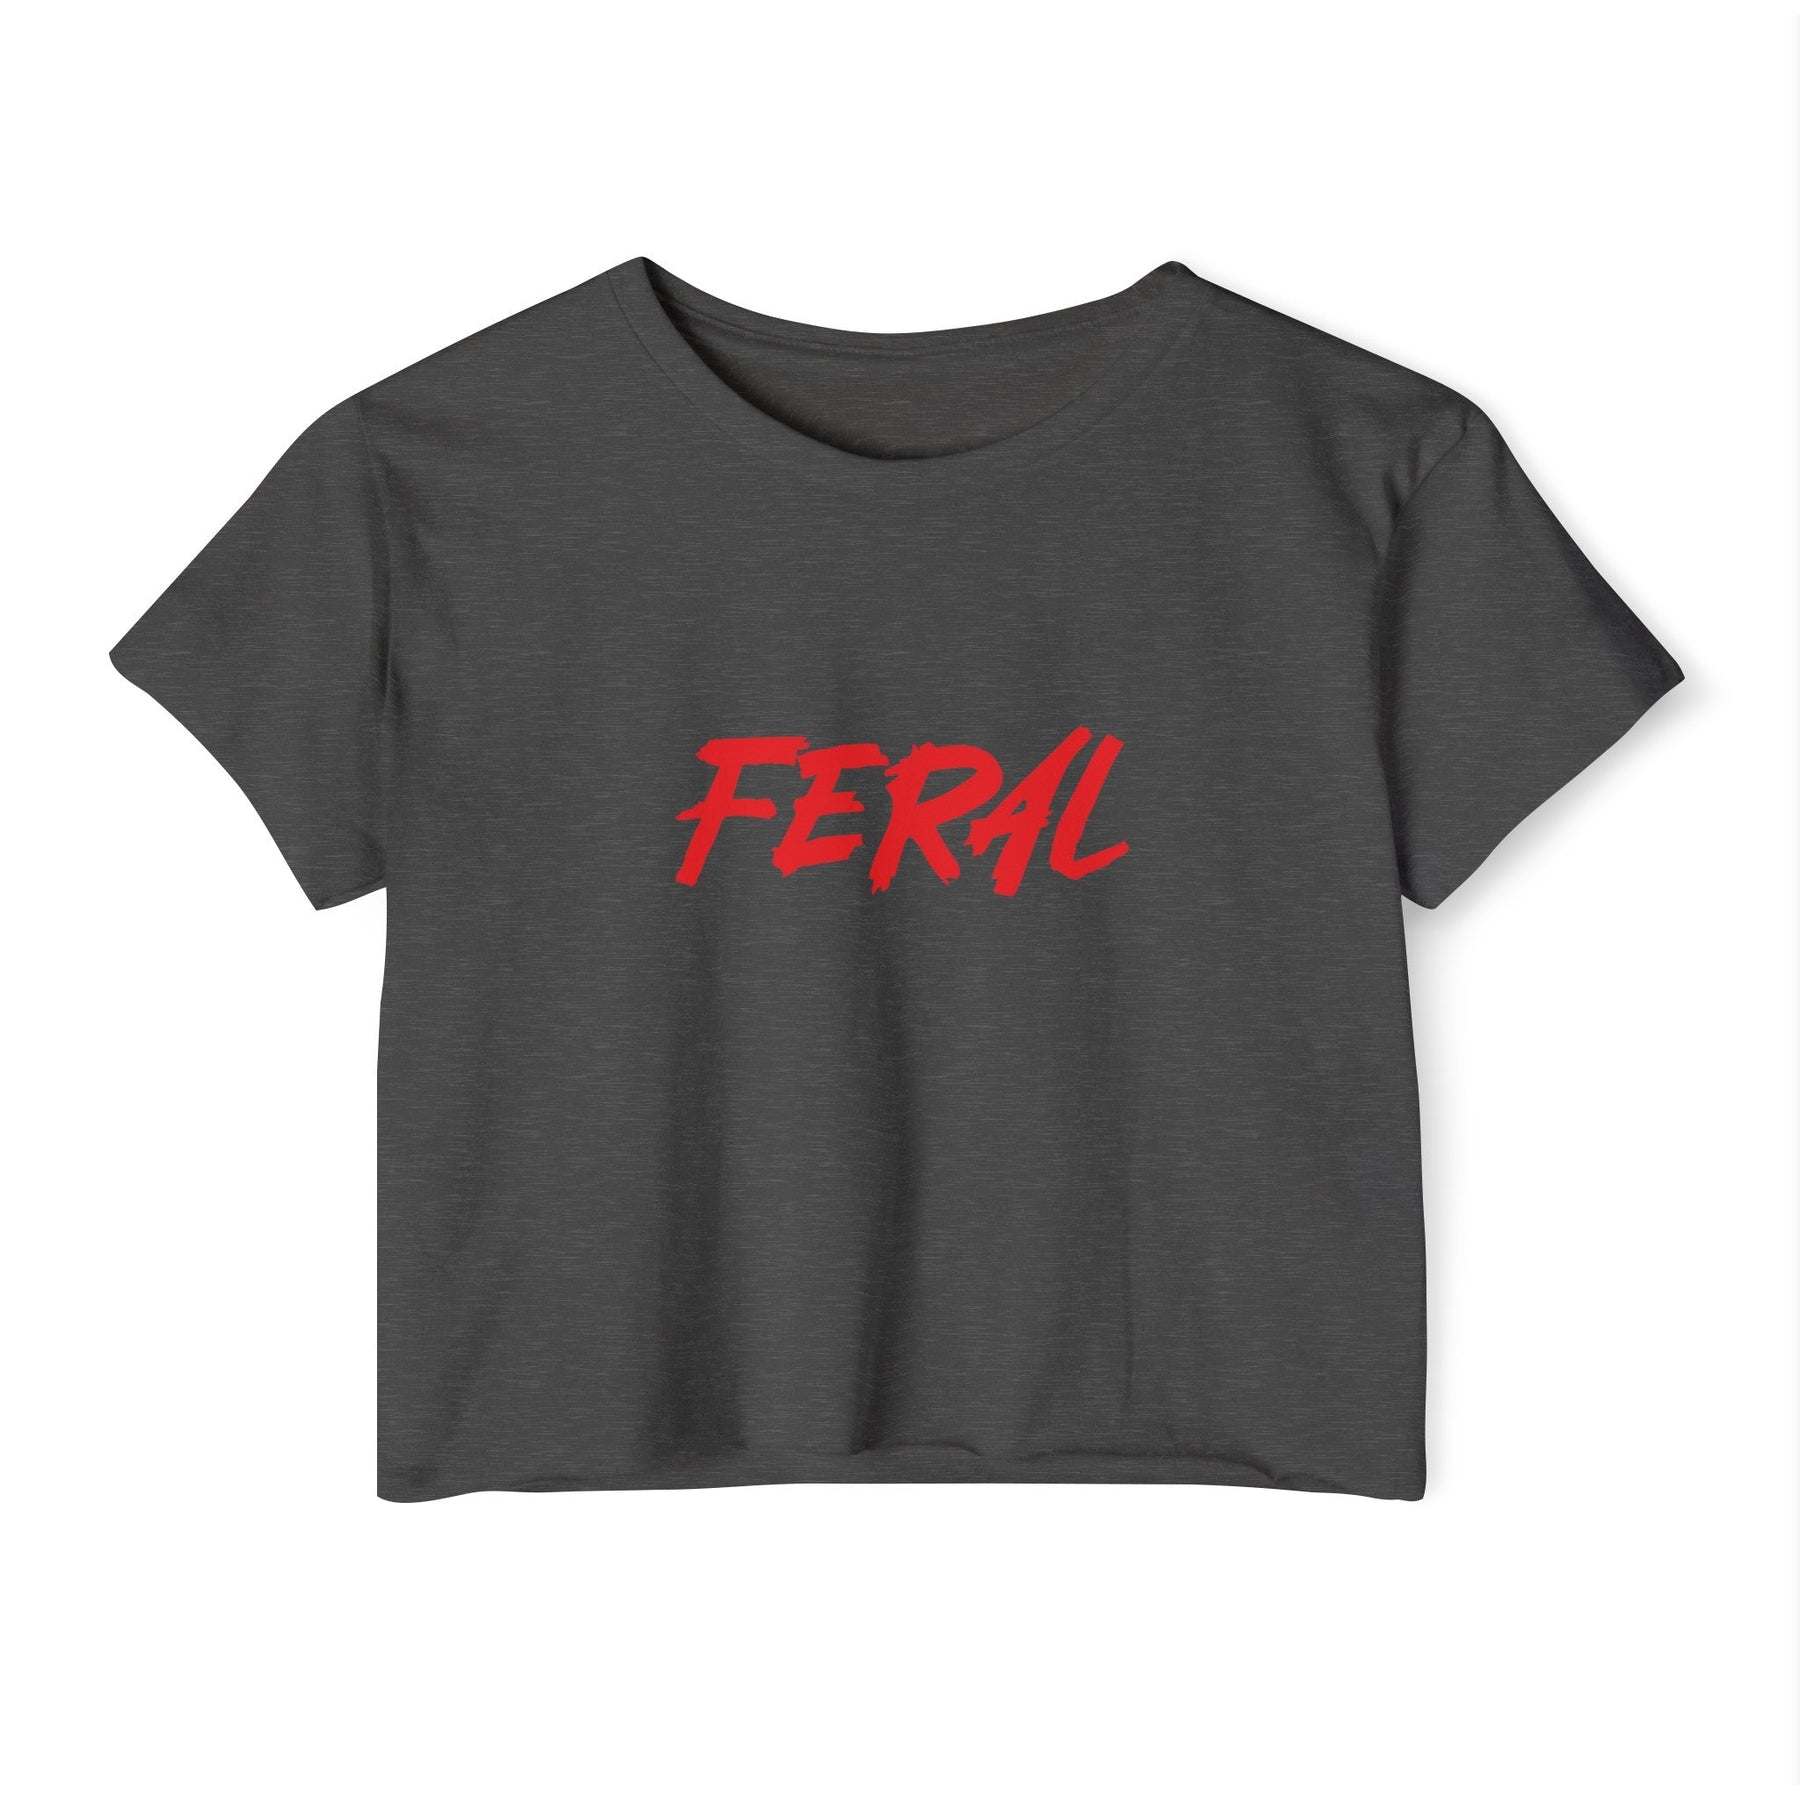 FERAL Women's Lightweight Crop Top - Goth Cloth Co.T - Shirt73590746139742148256